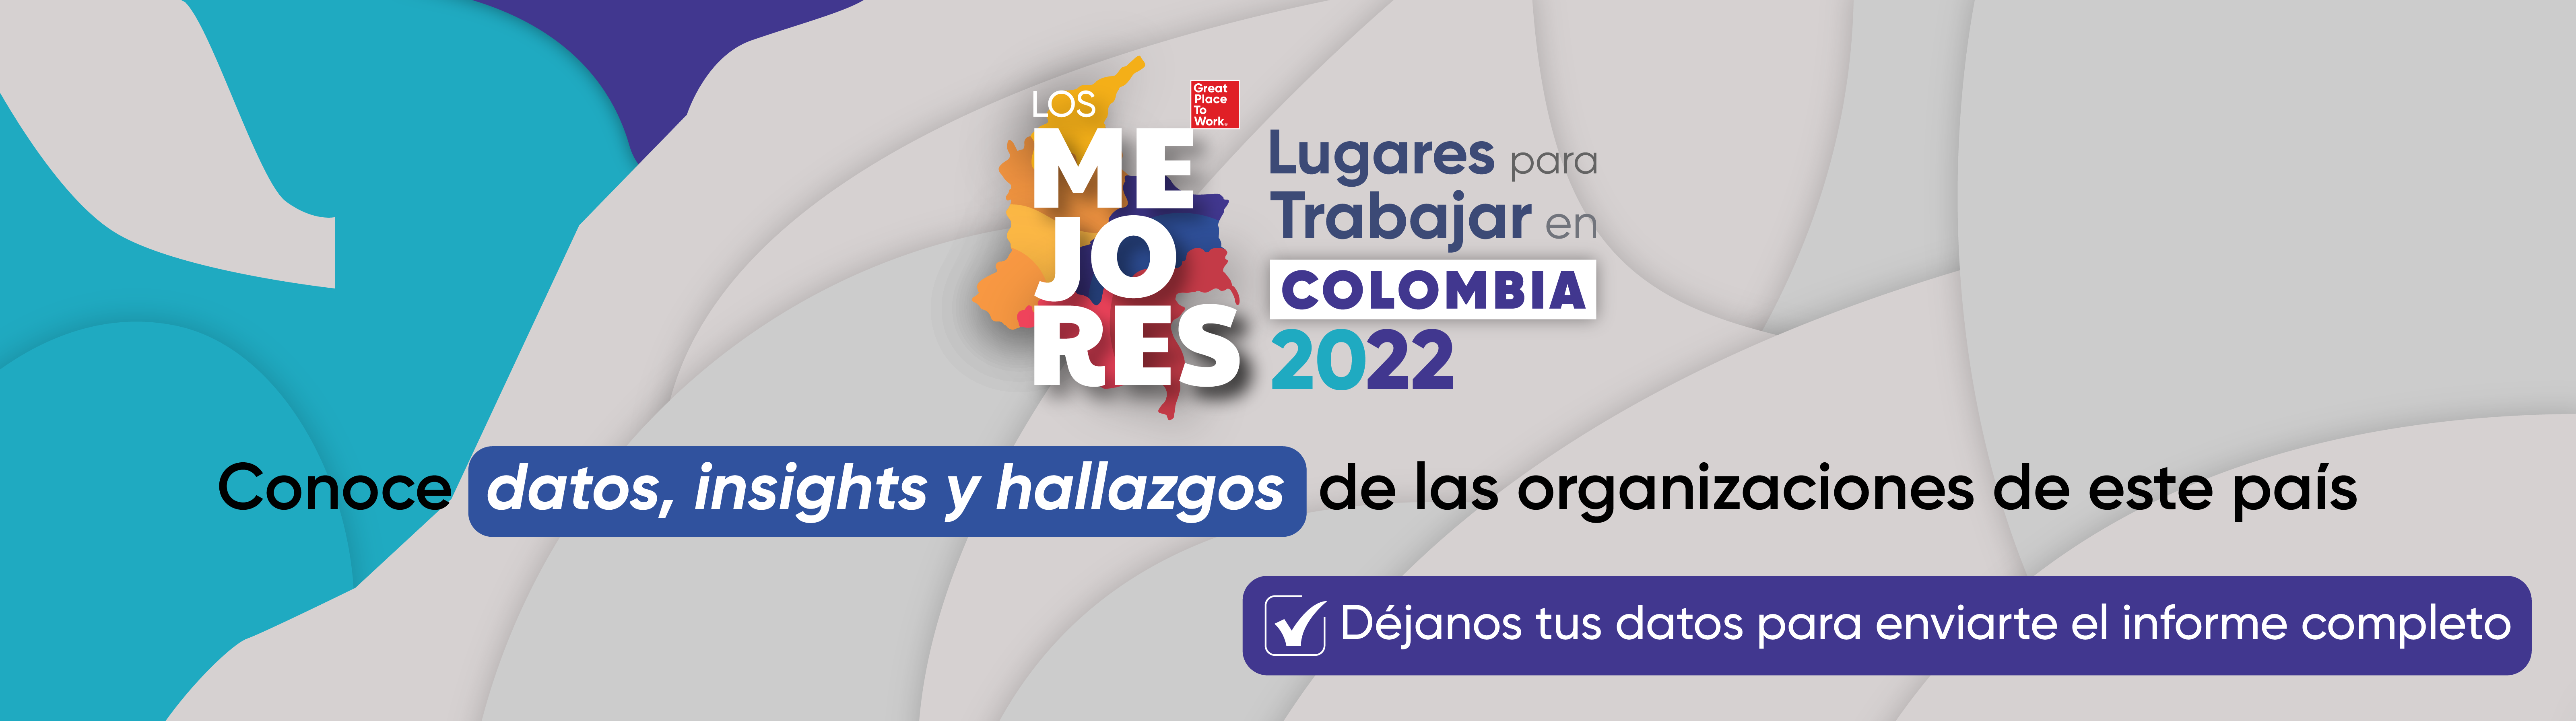 Los mejores lugares para trabajar en Colombia 2022 - Great Place to Work